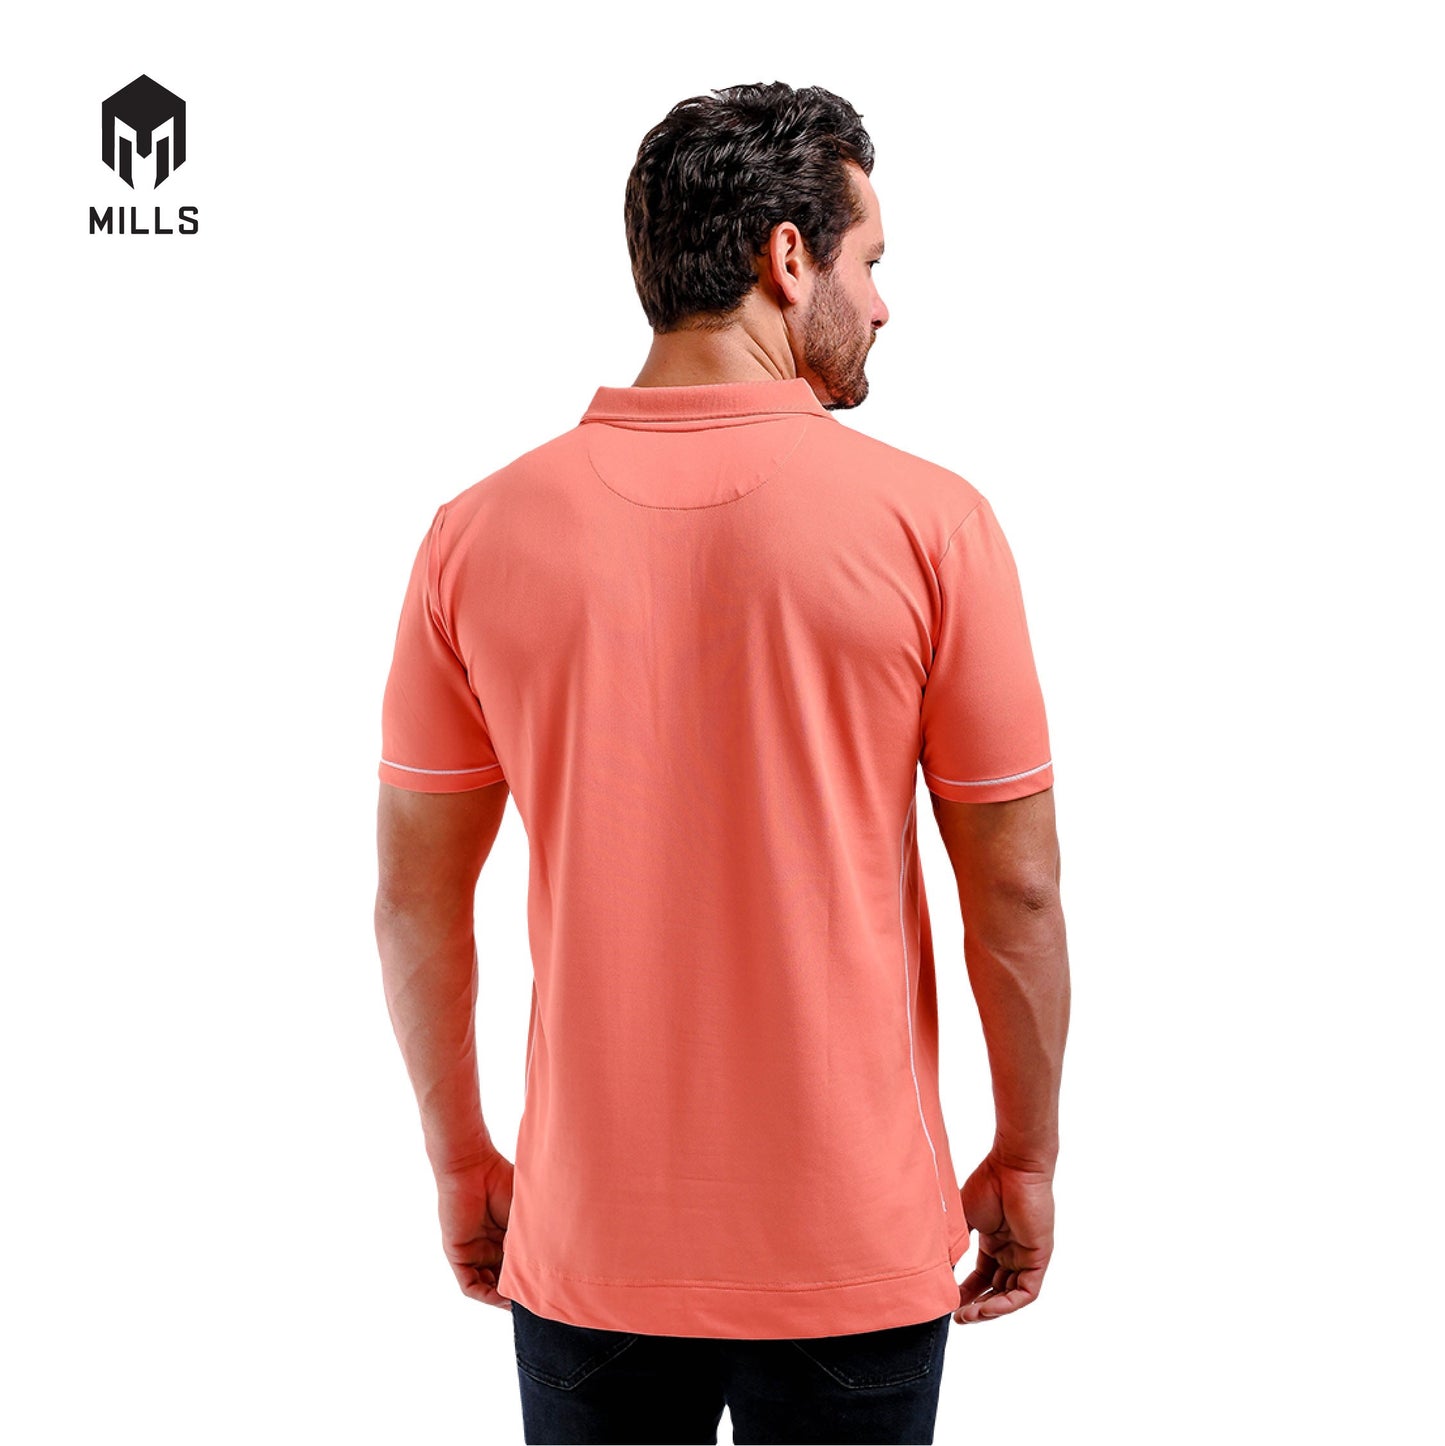 MILLS Polo Shirt Sport Style Revenge 2.0 17046